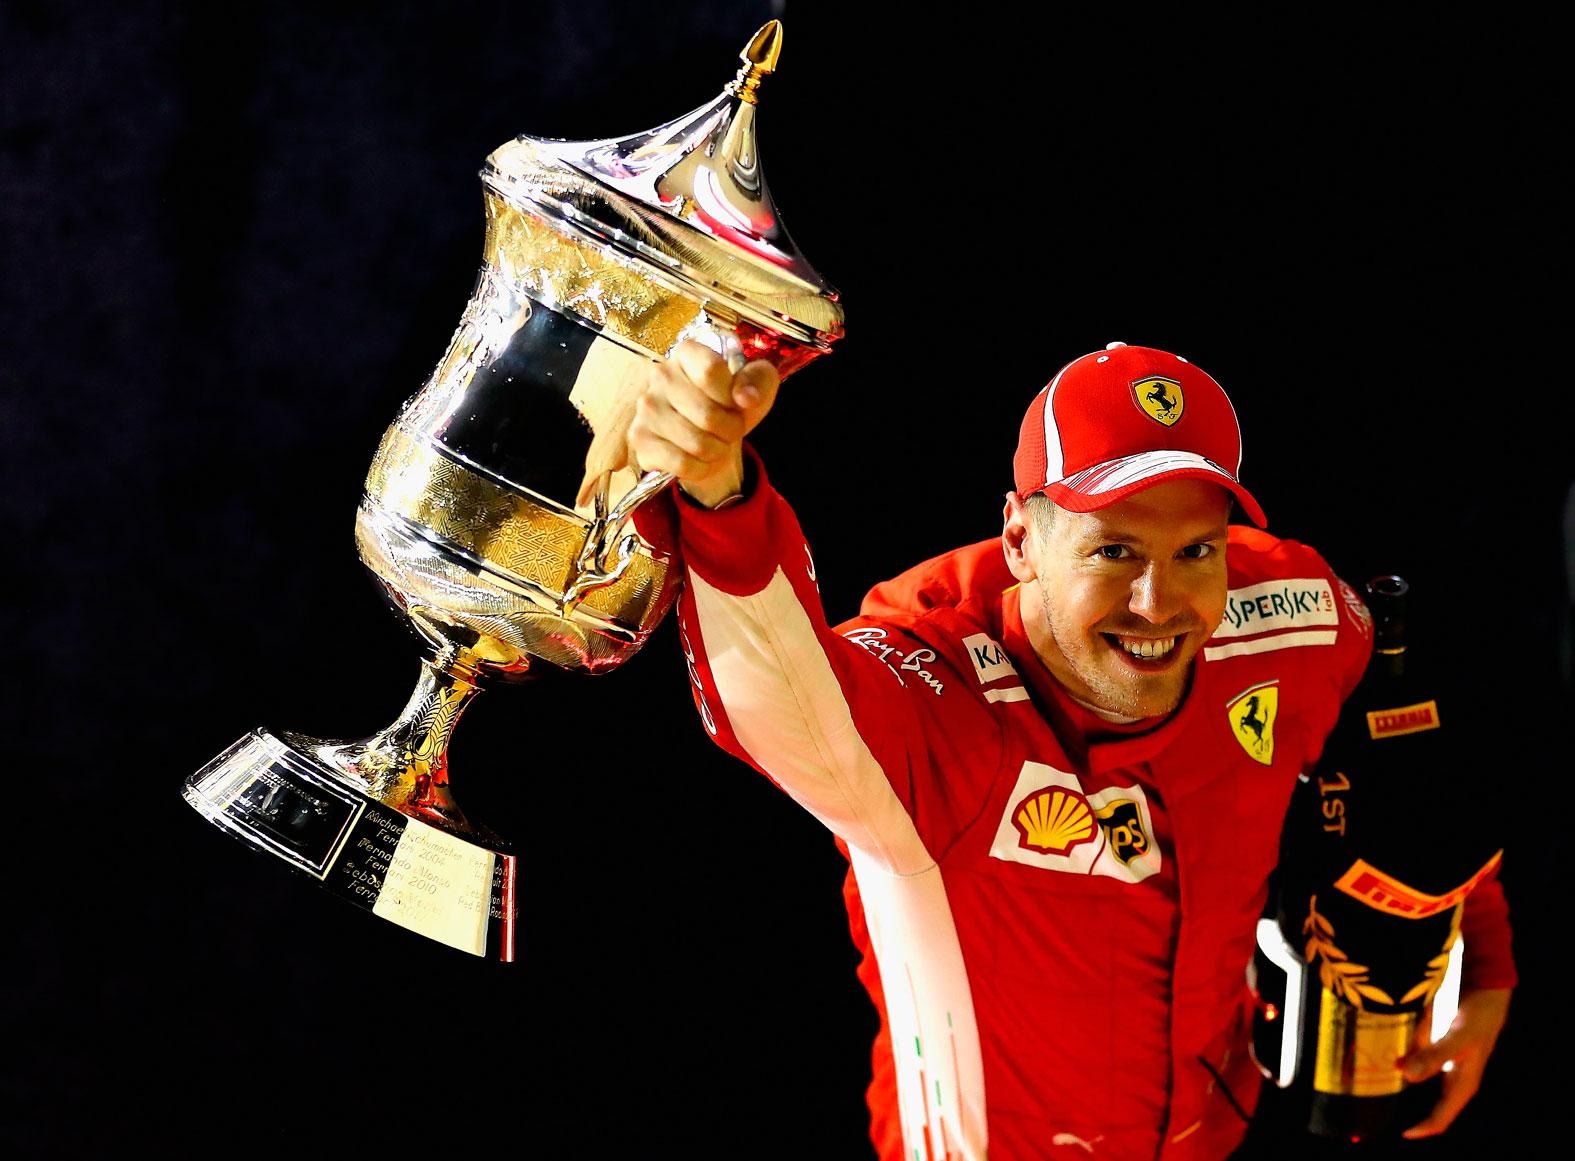 Sebastian Vettel vill ogärna utmåla sig till favorit att ta hem VM-titeln. ”Mercedes har fortfarande ett övertag”, säger han.